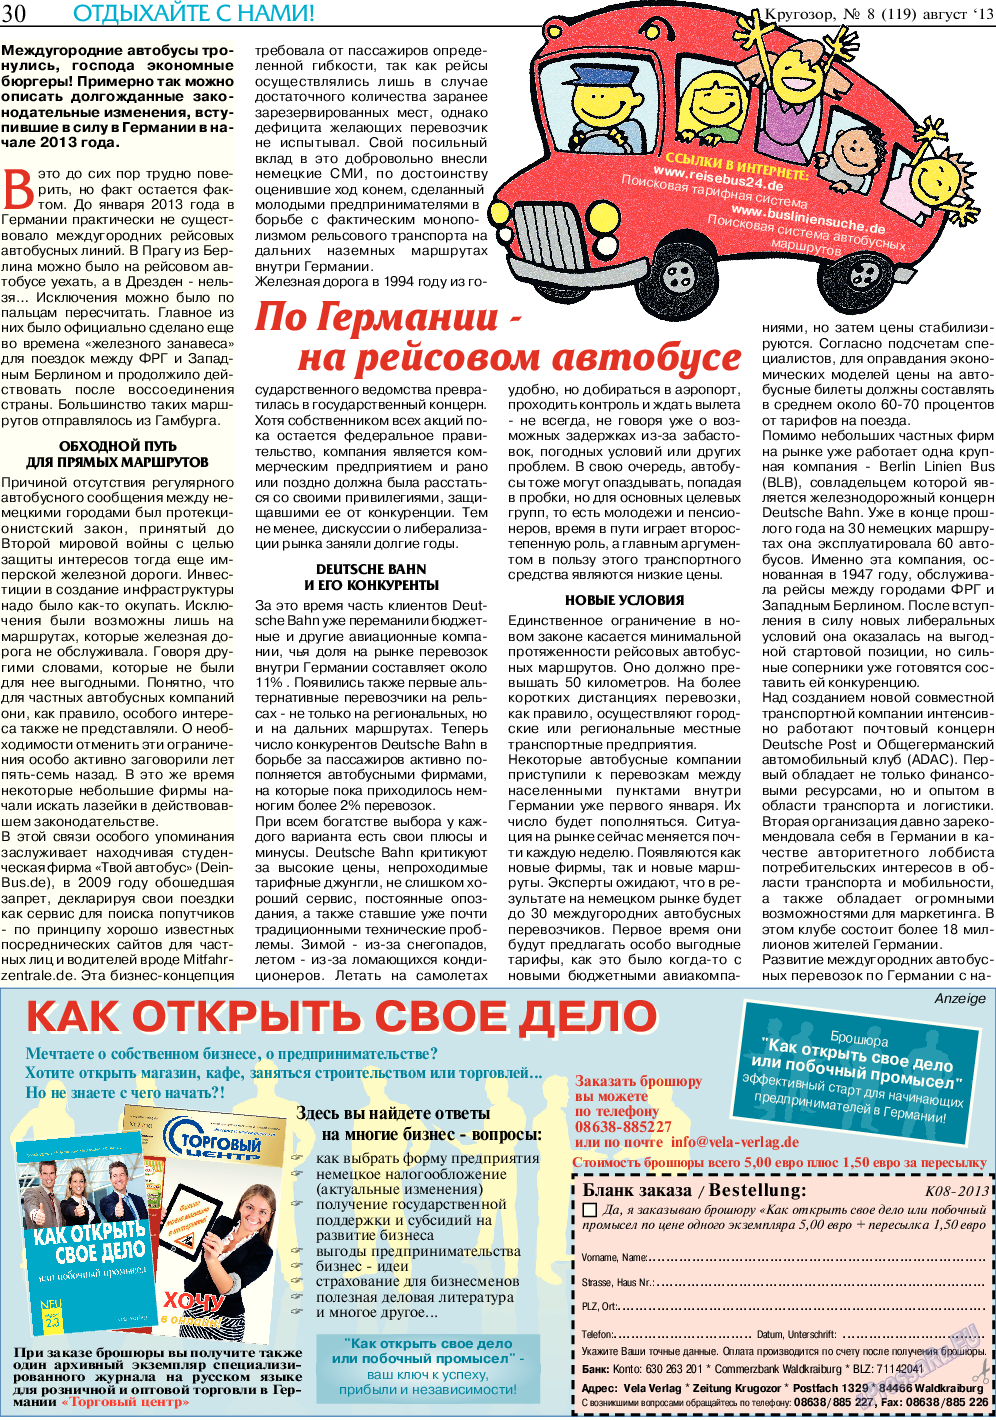 Кругозор, газета. 2013 №8 стр.30